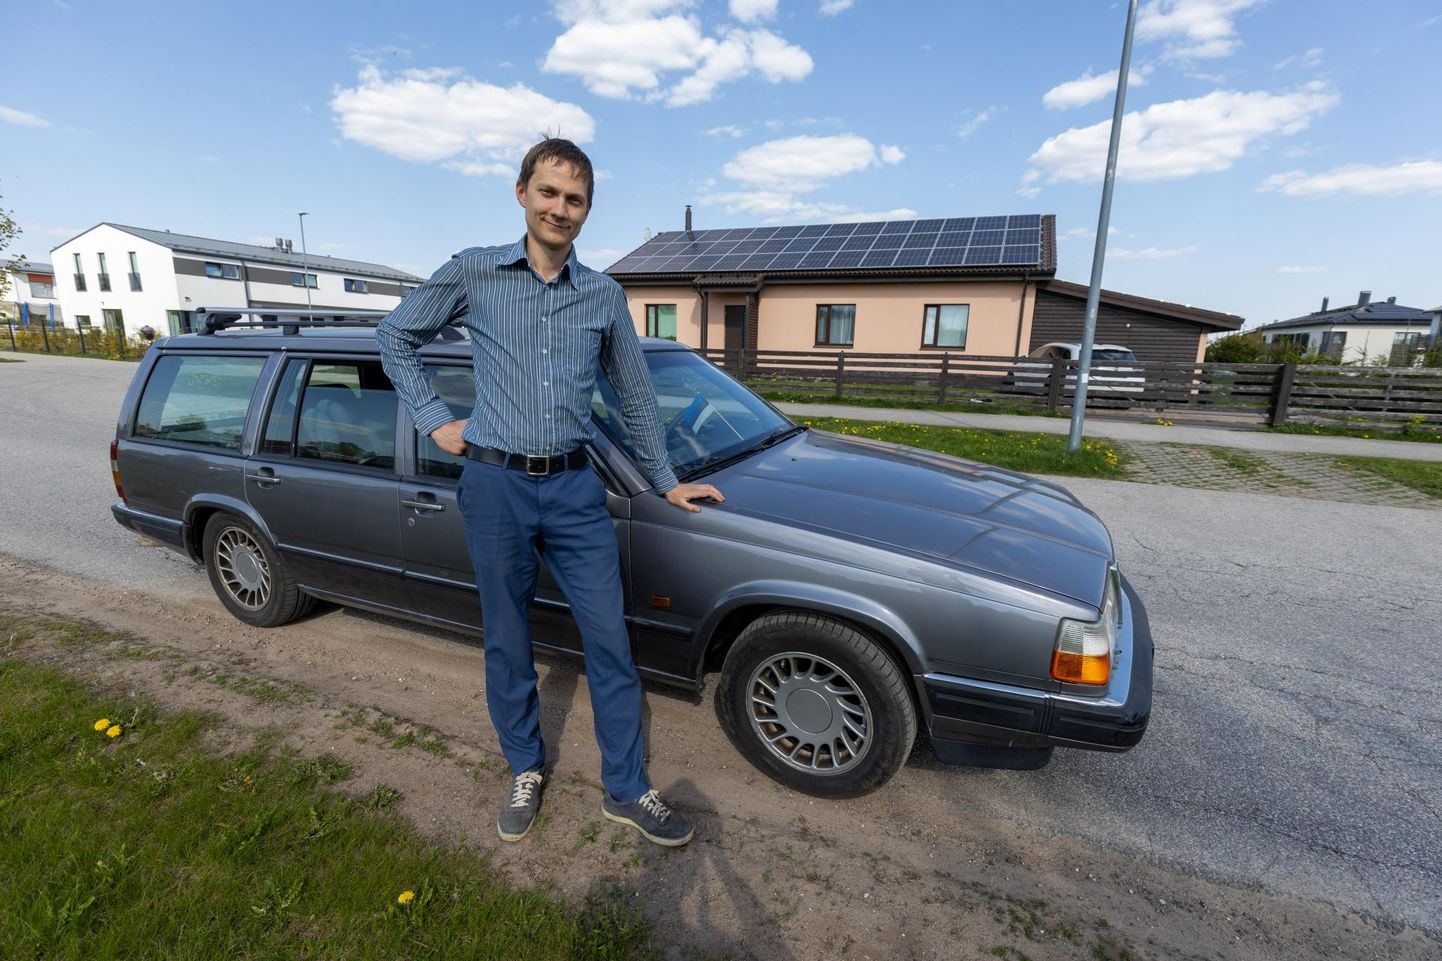 Повышение зарплаты учителя физики Юхана Коппеля пойдет на выплату жилищного кредита. Он не намерен менять 30-летний автомобиль Volvo на новую машину.